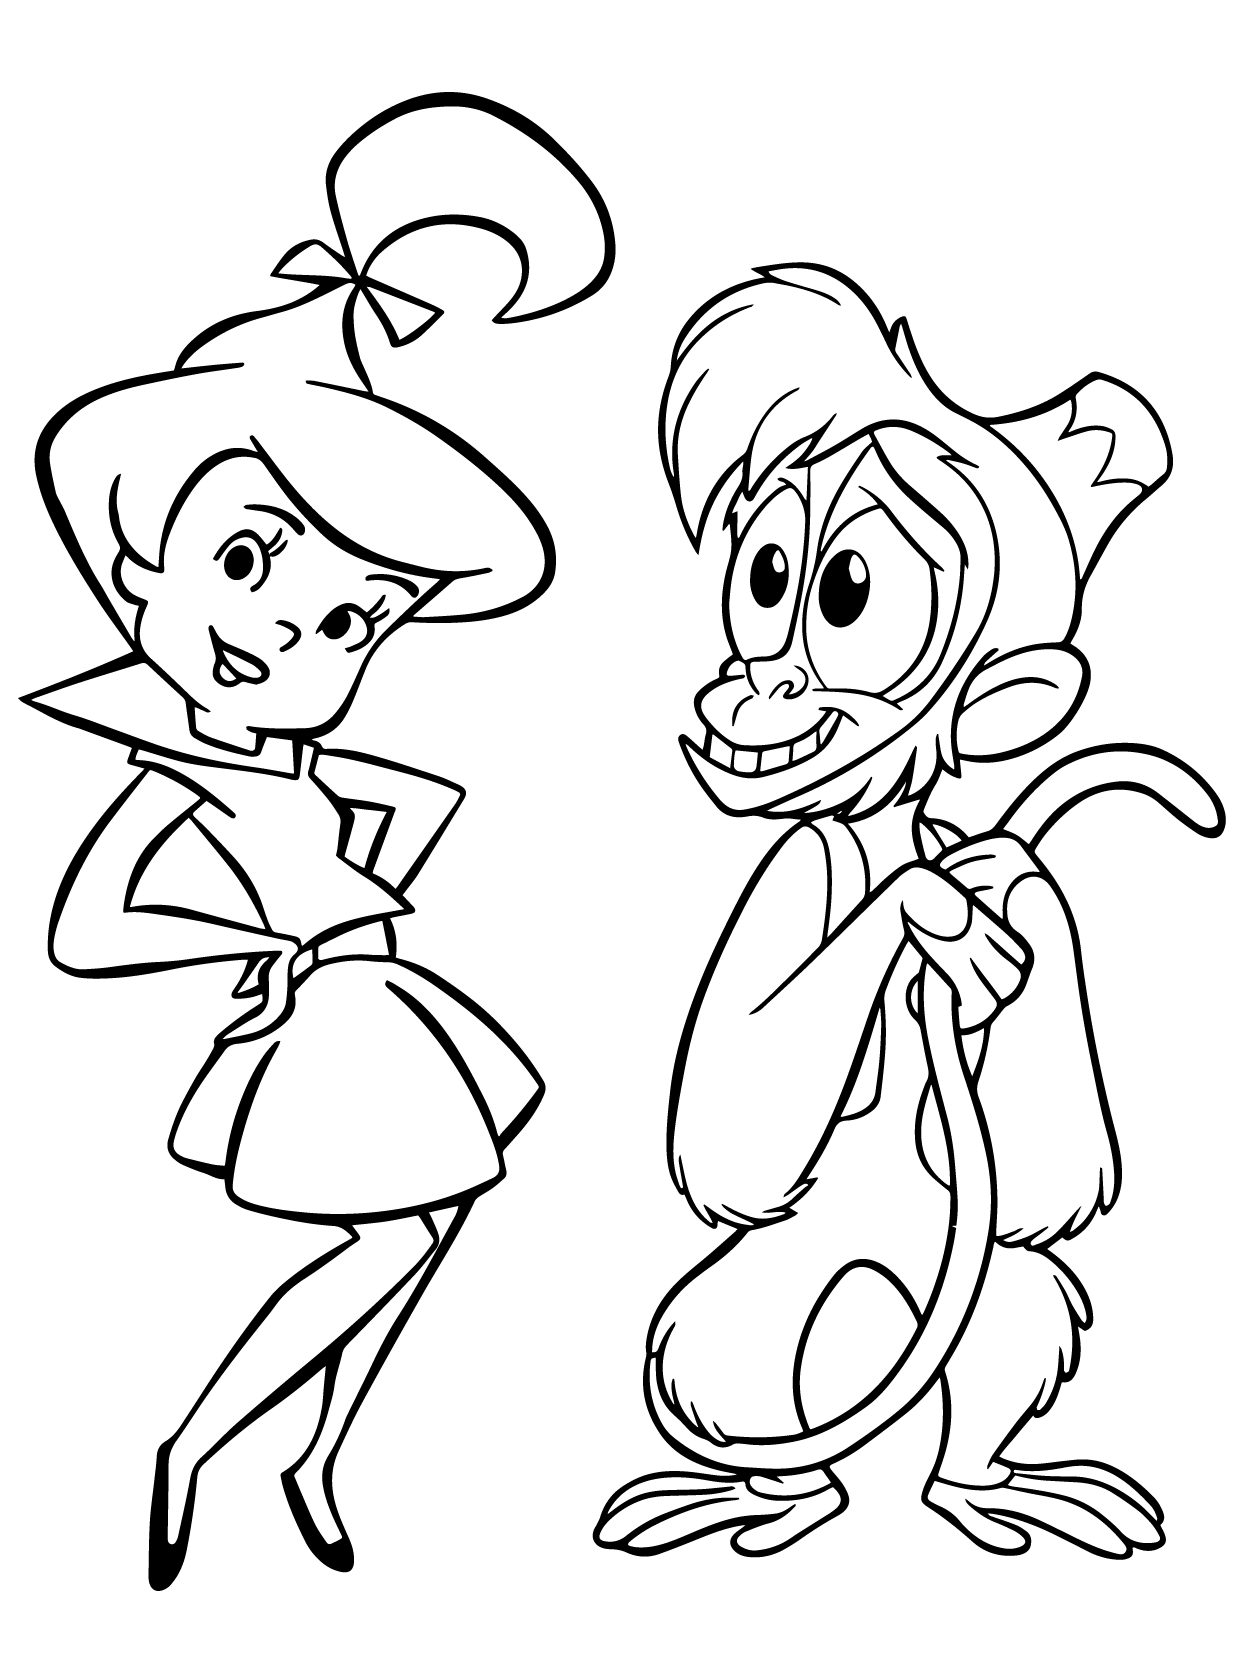 Betty and Monkey